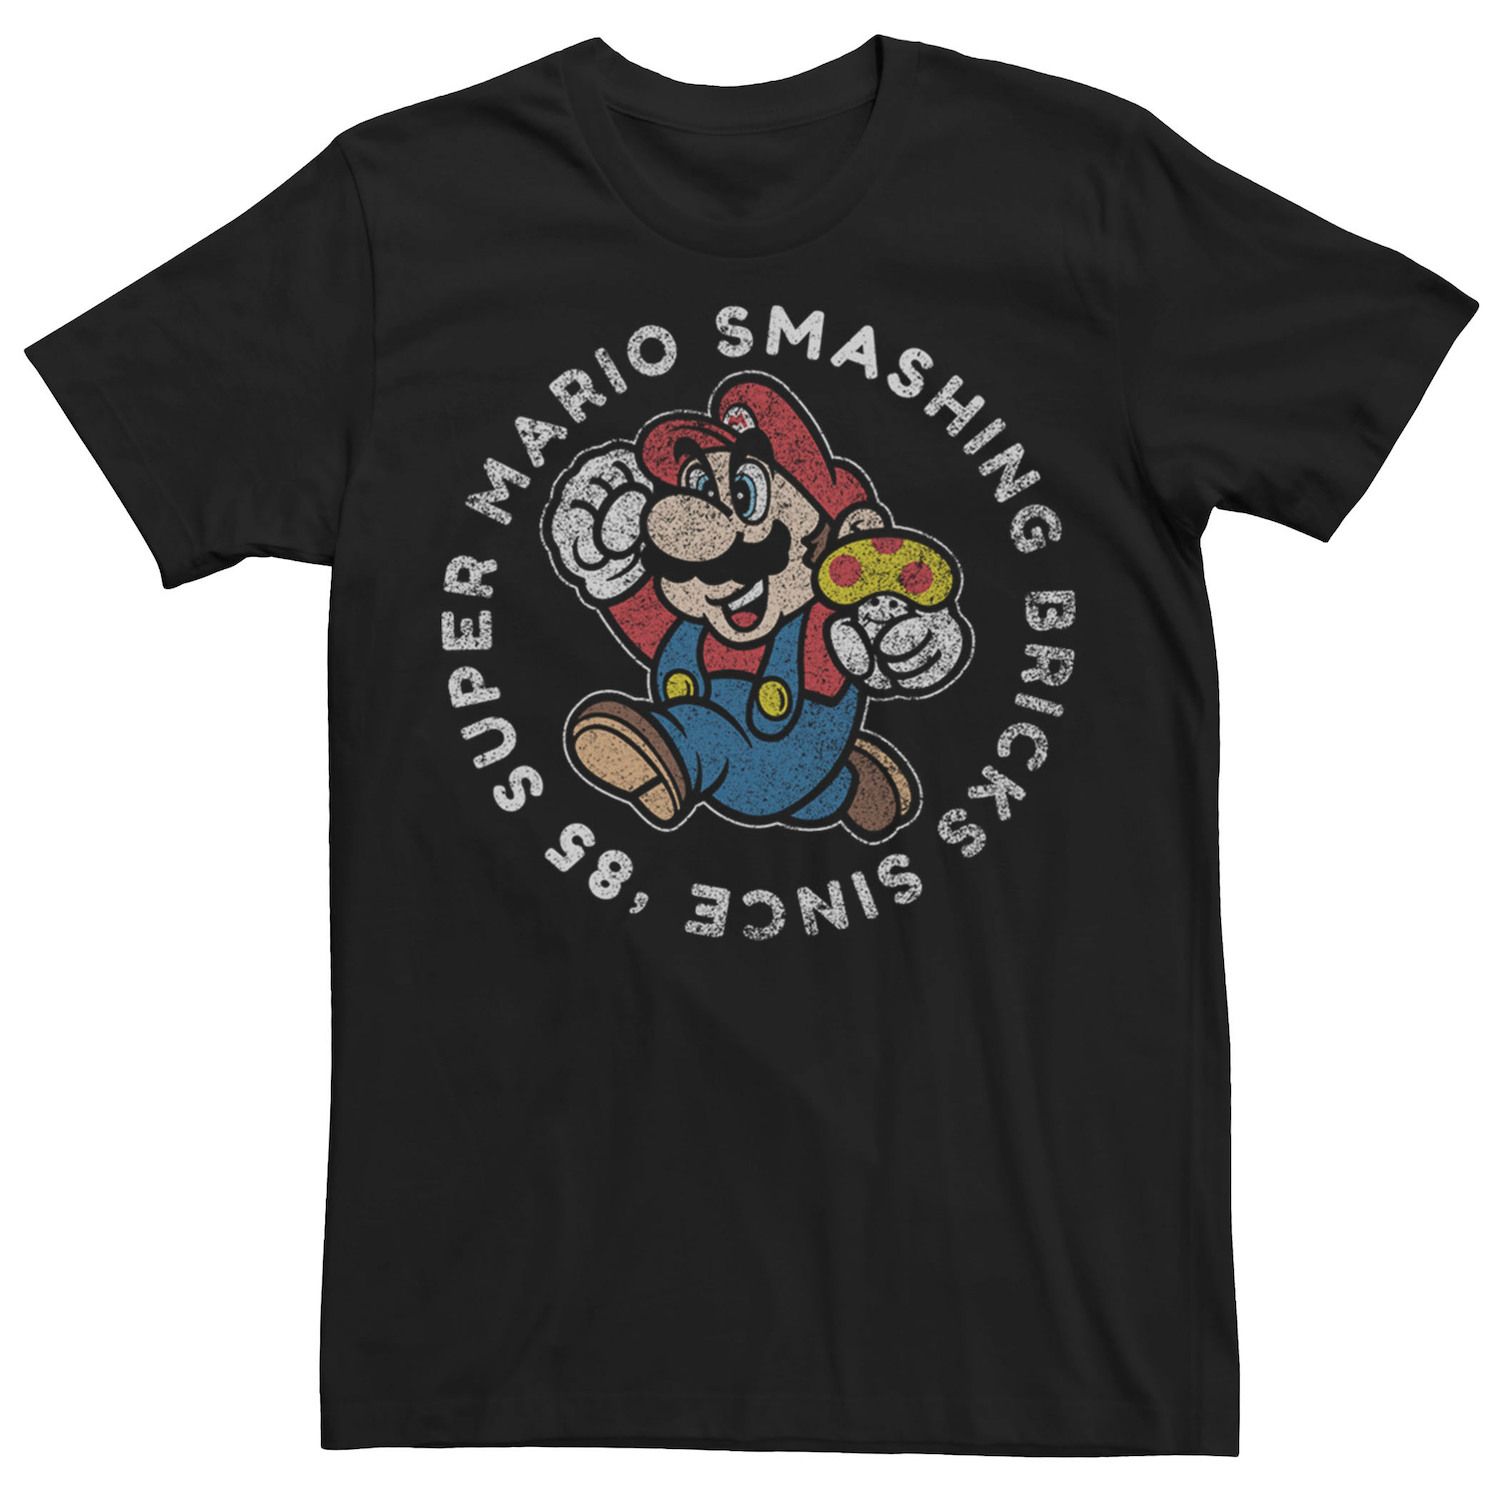 Мужская винтажная футболка с графическим принтом Nintendo Super Mario Smashing Bricks Licensed Character футболка мужская с принтом тарелок забавная тенниска с графическим принтом винтажная майка